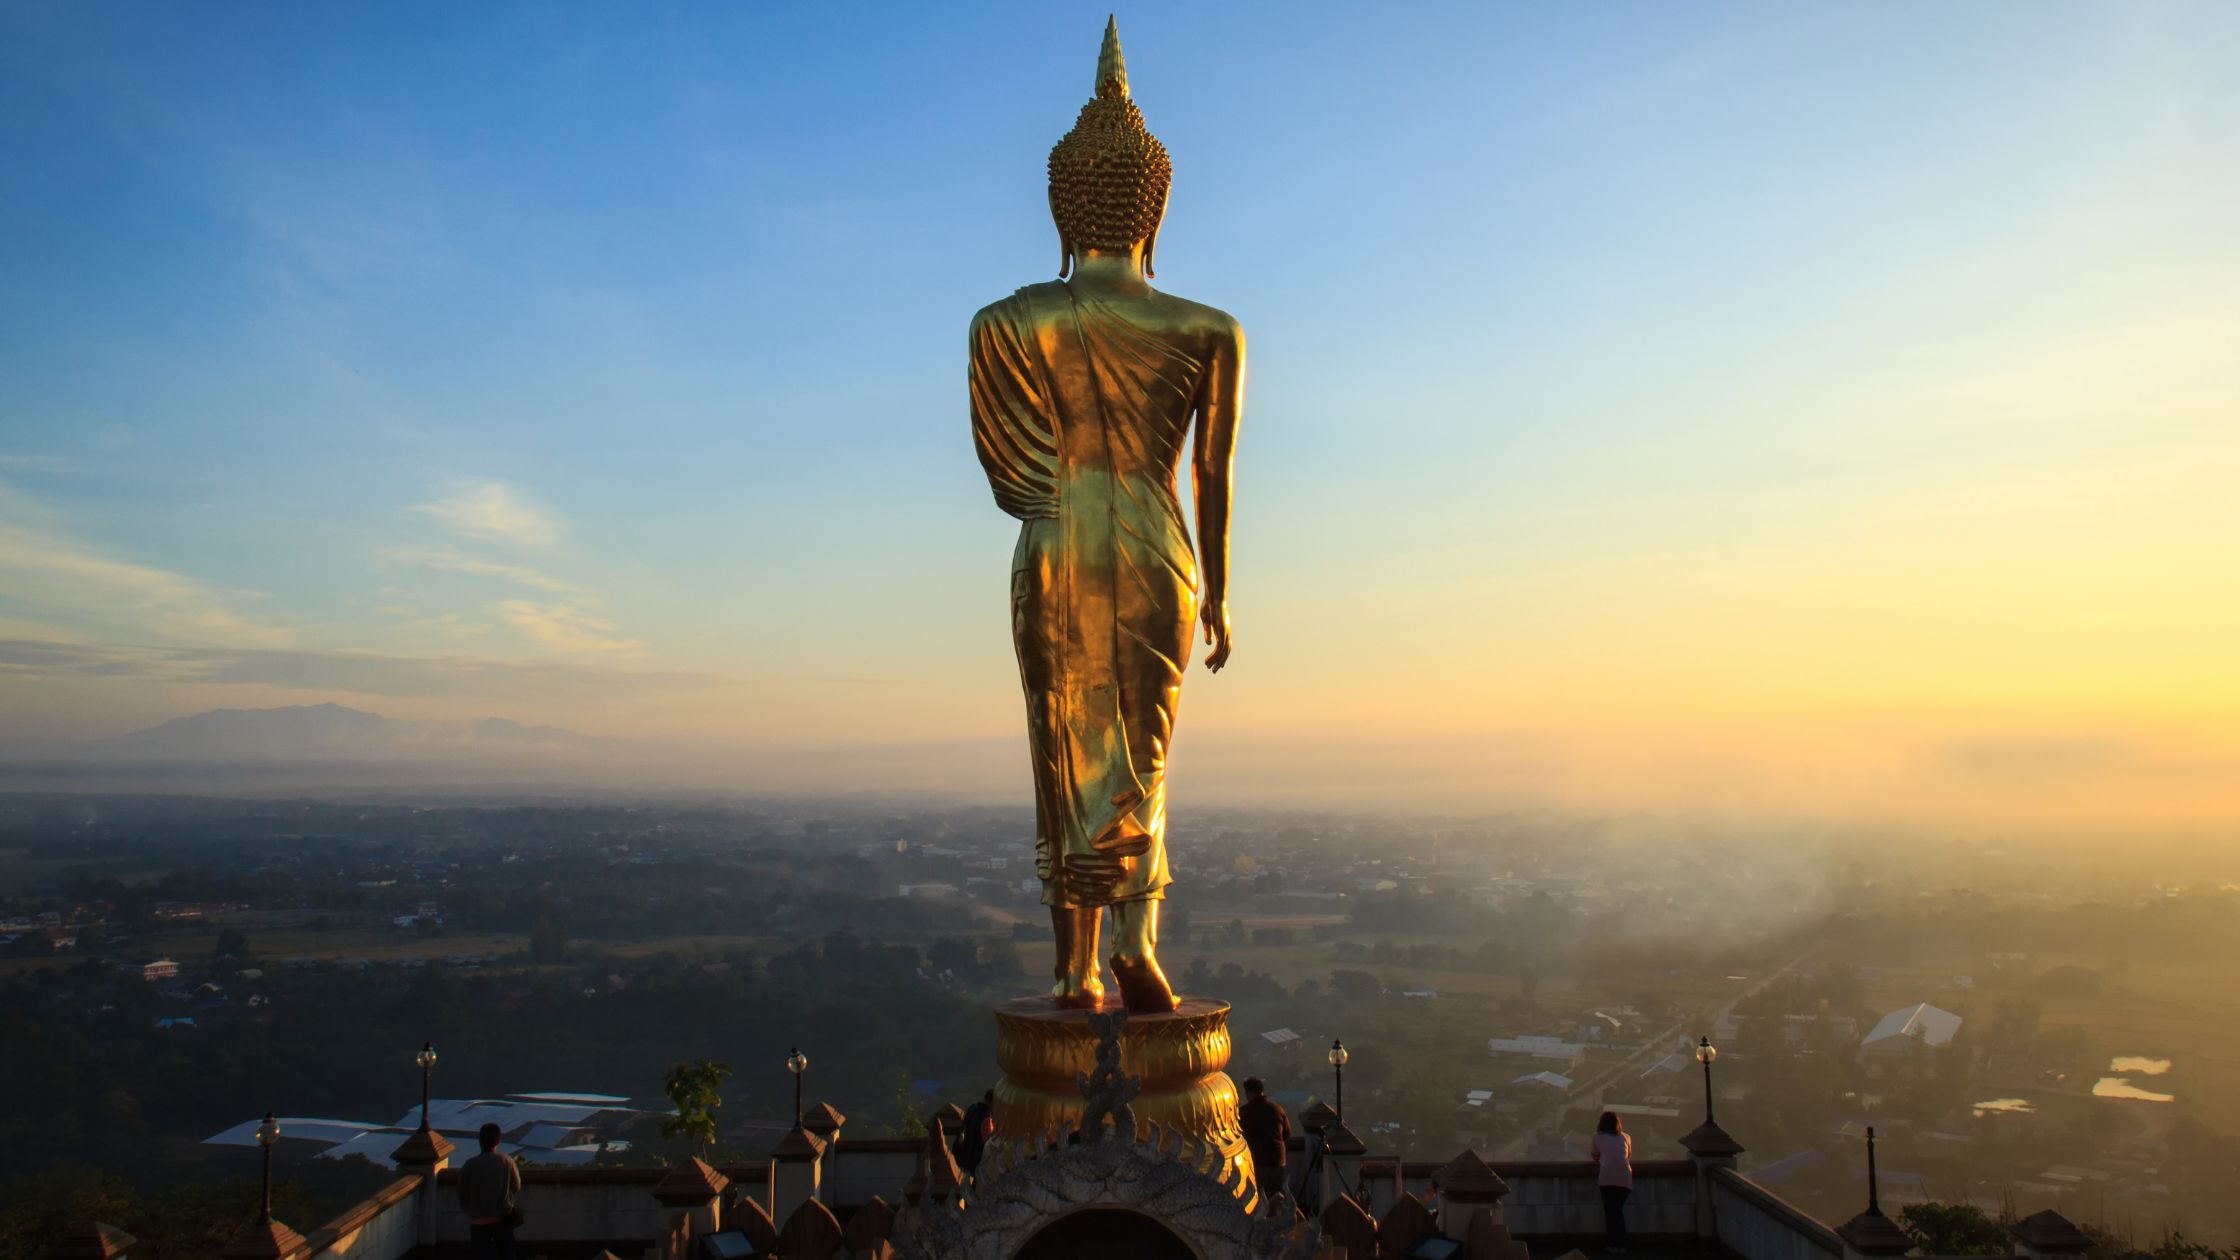 Estatua dorada de Buda en el templo de Khao Noi, provincia de Nan, Tailandia - Es importante tener en cuenta que ni la visa de residente a largo plazo ni la visa Thai Elite son caminos hacia la ciudadanía. Estos programas son simplemente para la residencia y no cuentan para la naturalización.